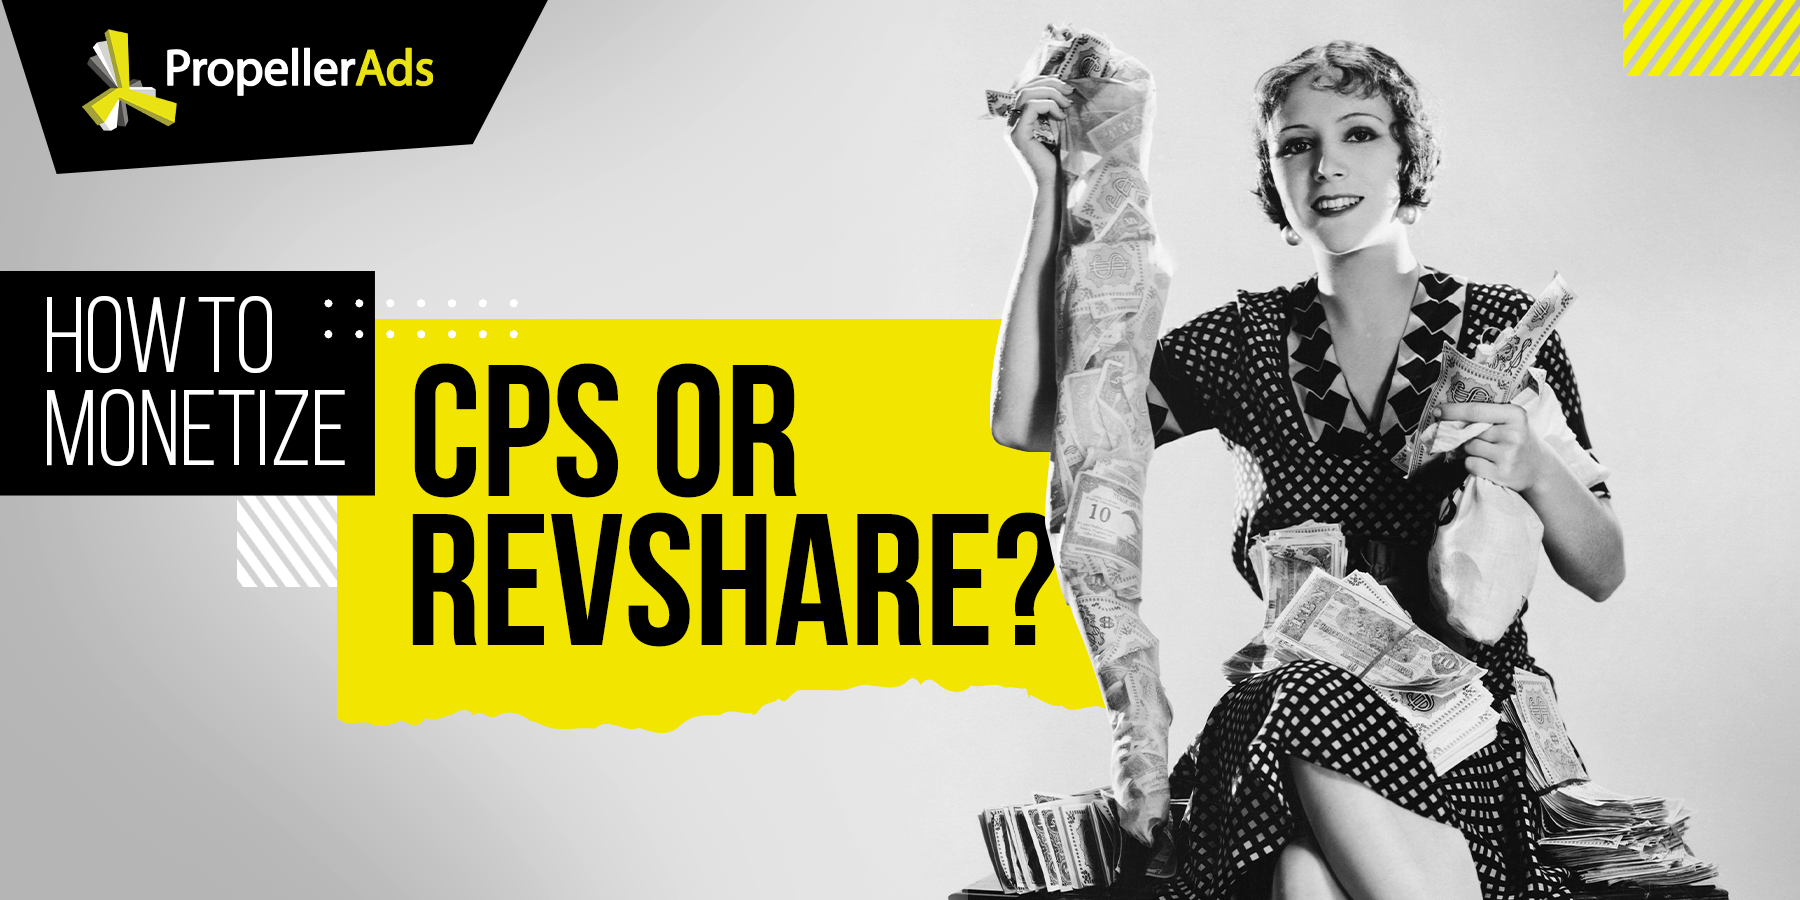 CPS - Revshare- monetization